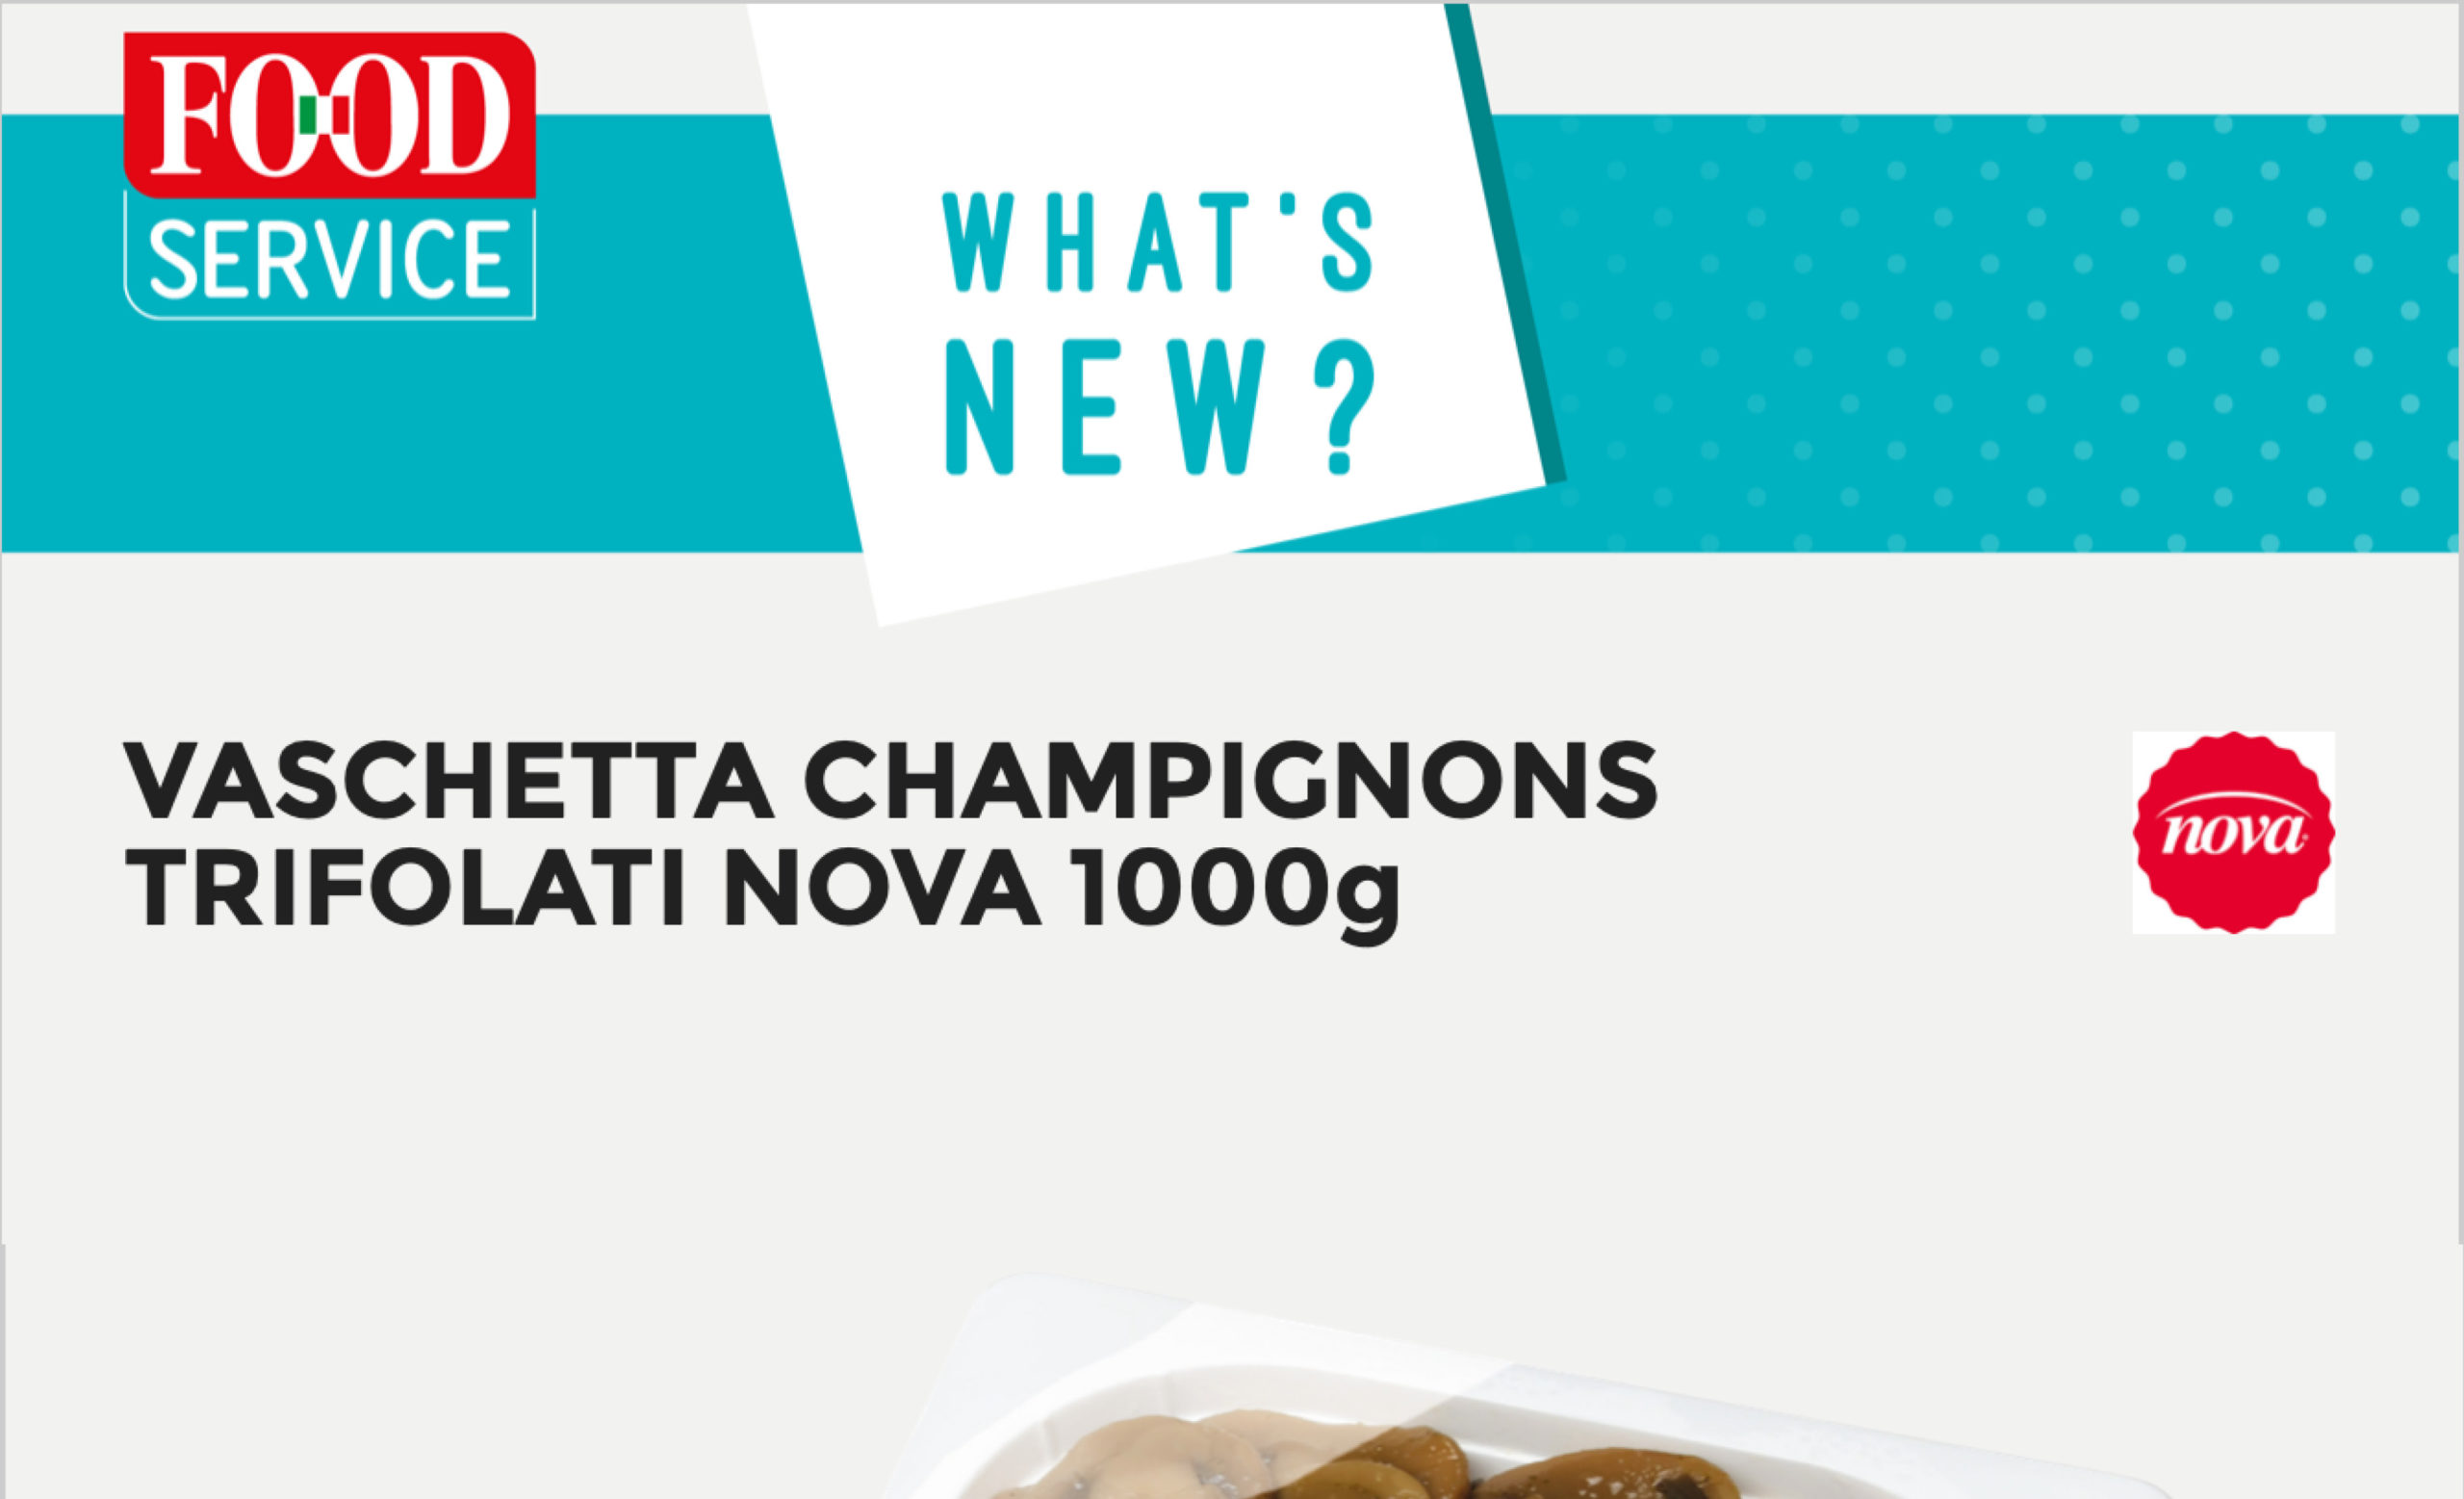 What's new? Nova per FOOD SERVICE